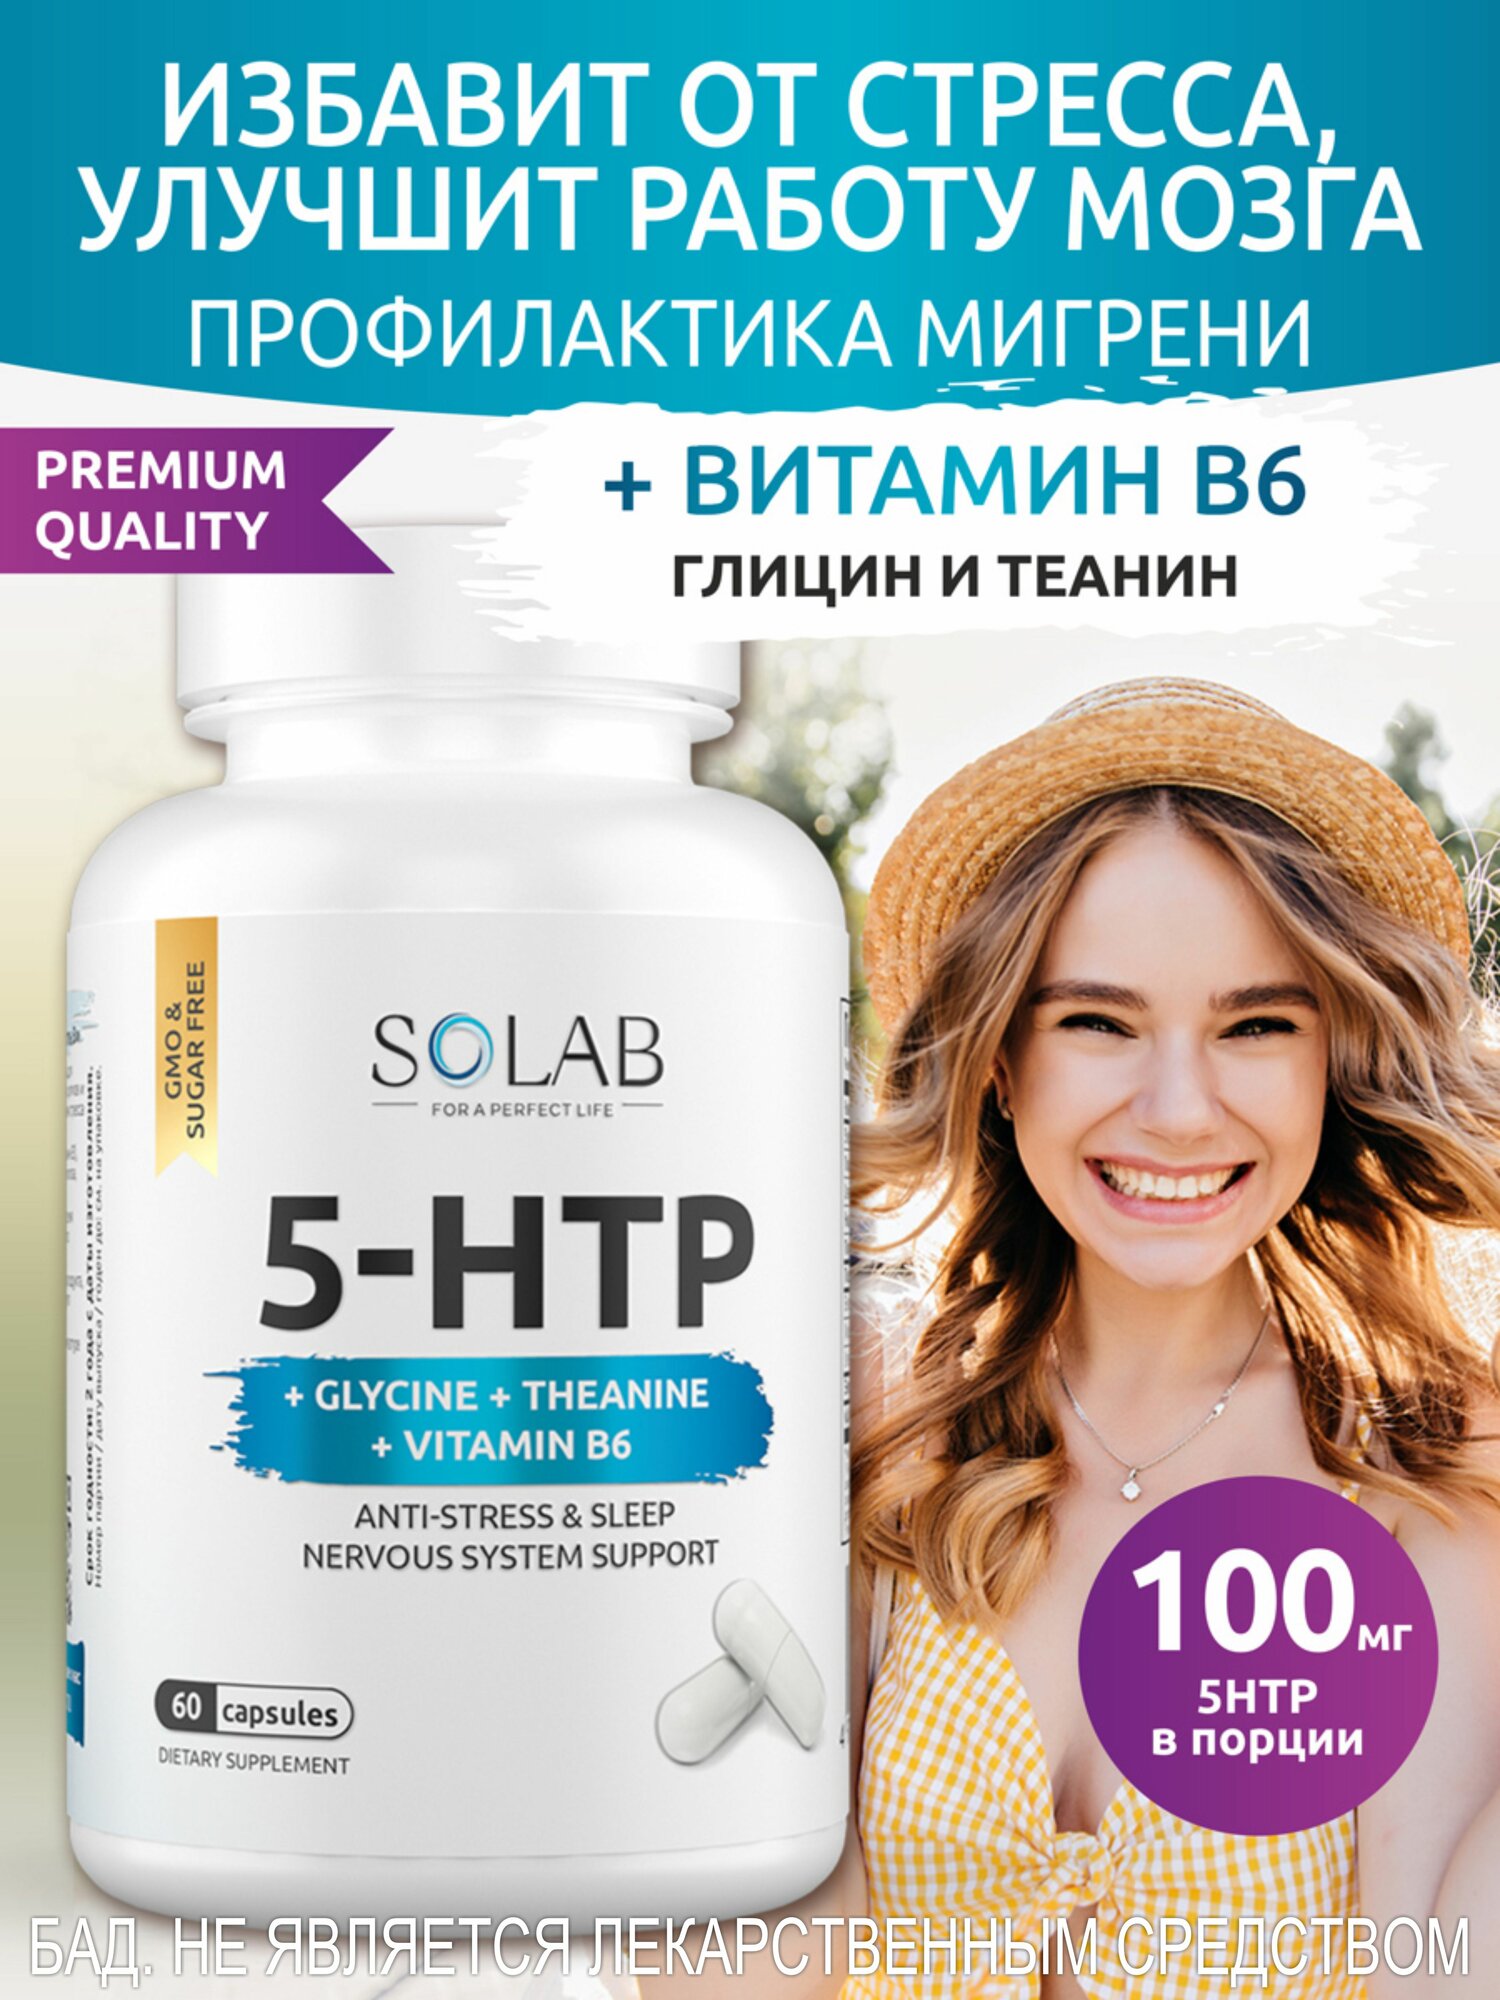 SOLAB 5 HTP Гидрокситриптофан с глицином, теанином и витамином B6 витамины для снижения стресса, против мигрени, на 1 месяц успокоительное, успокаивающий препарат для нервов, антидепрессант, 5HTP 5ХТП